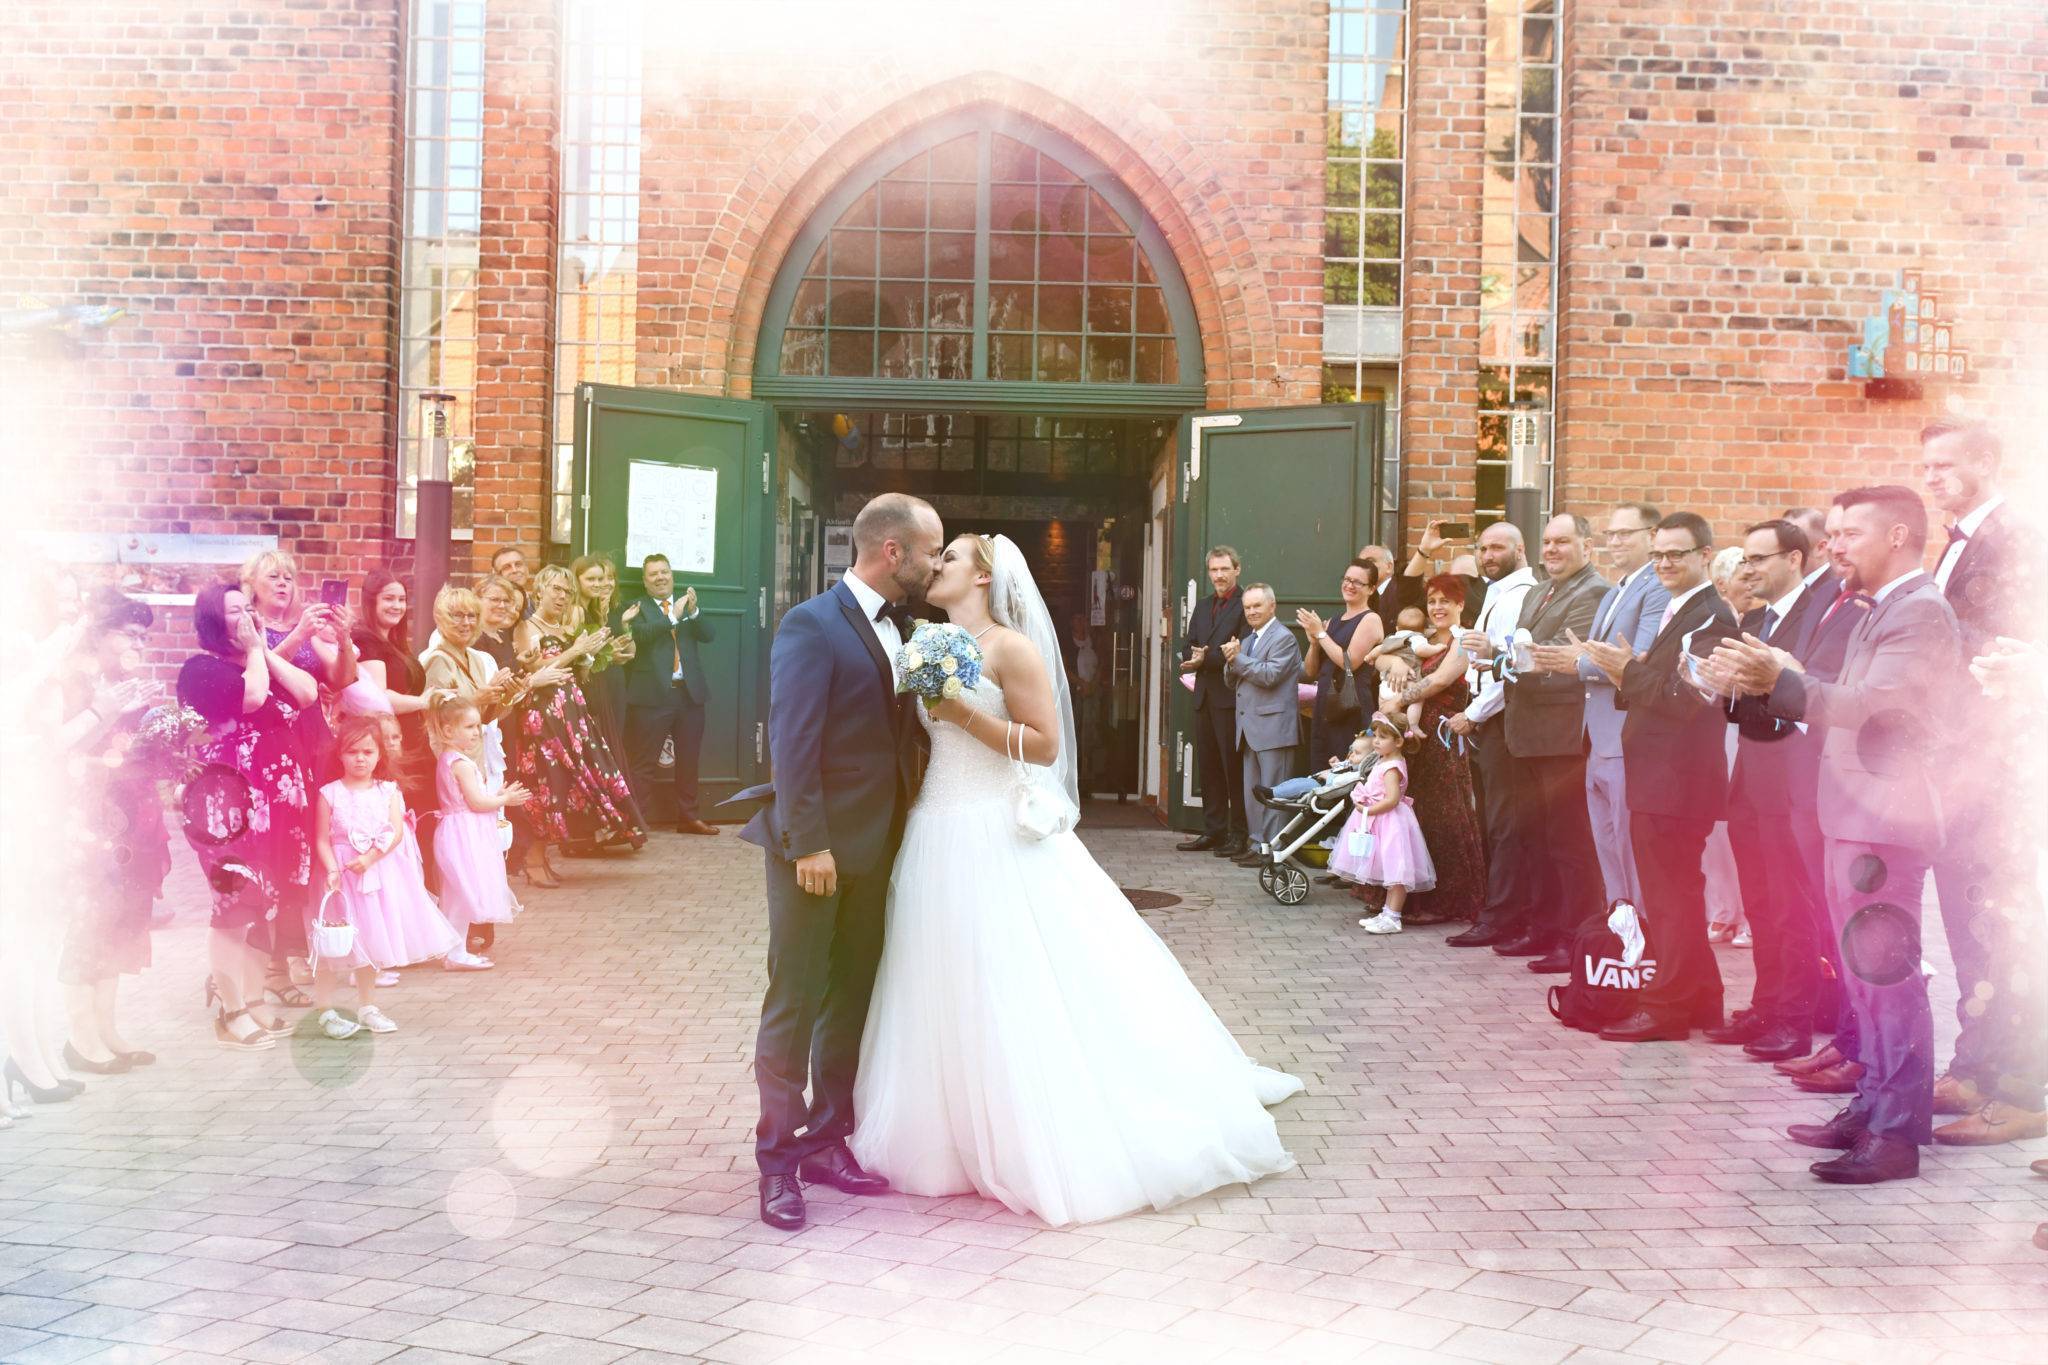 Brautpaar Fotoshooting vor dem Standesamt Lüneburger Wasserturm mit Kuss